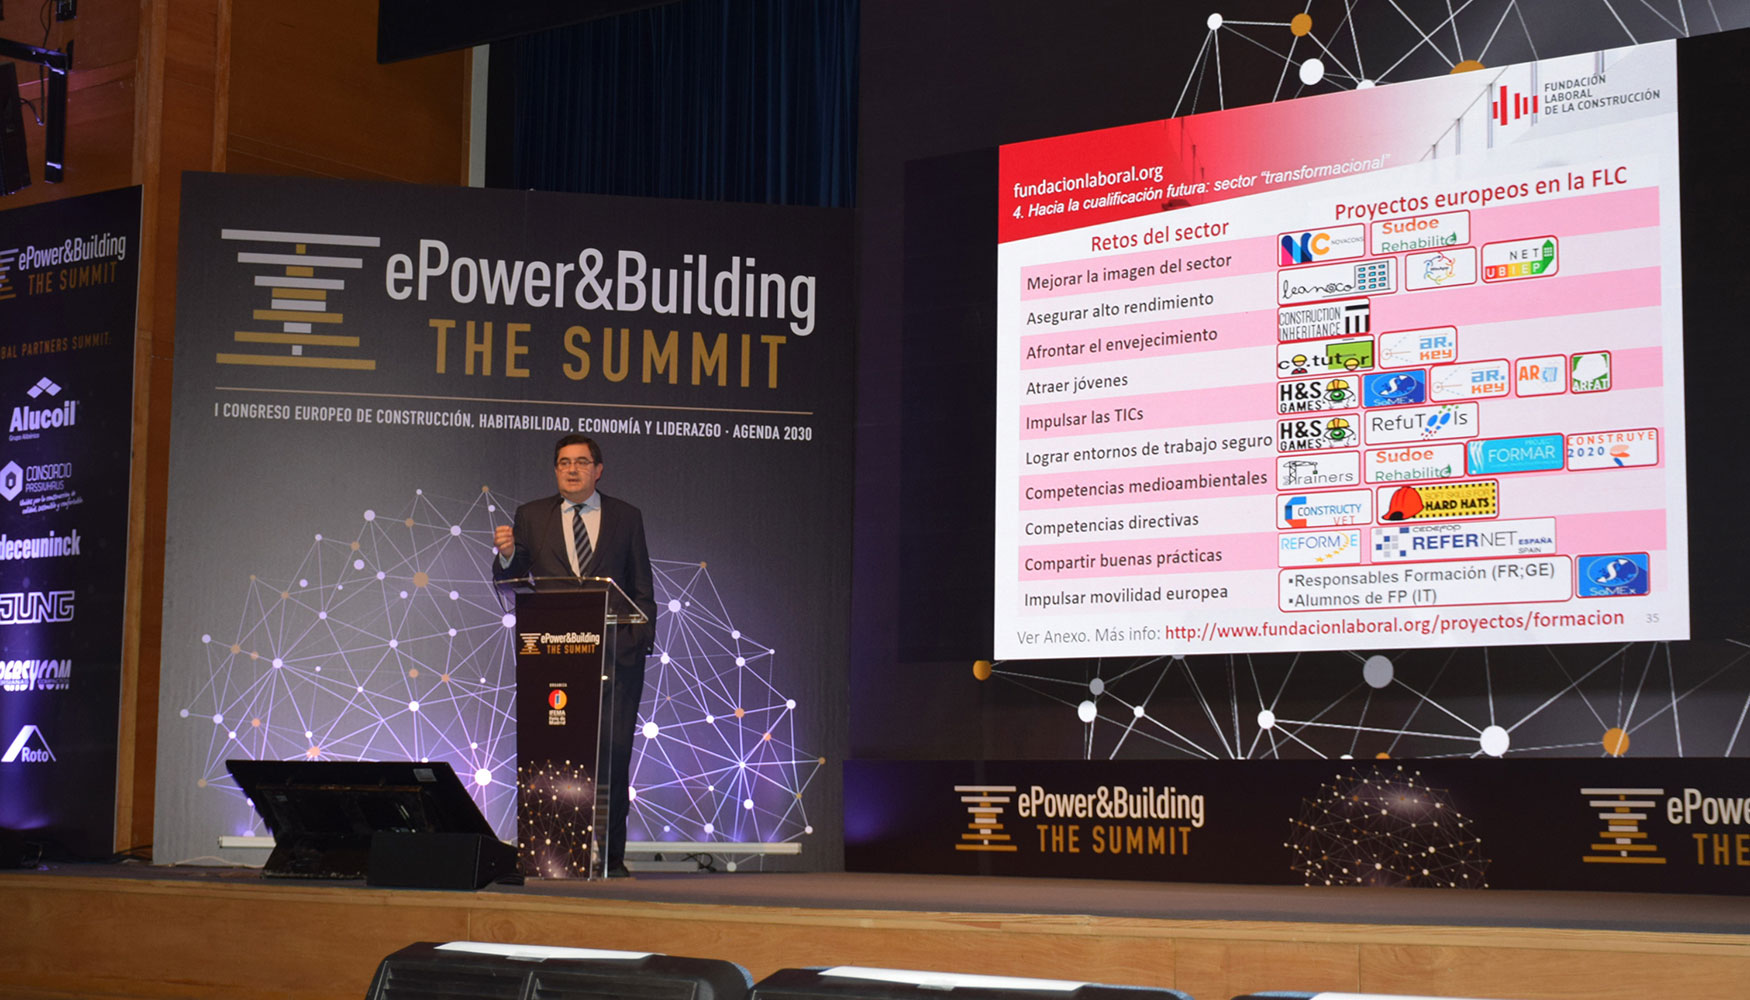 Participacin de La Fundacin Laboral en ePower&Building The Summit 2017